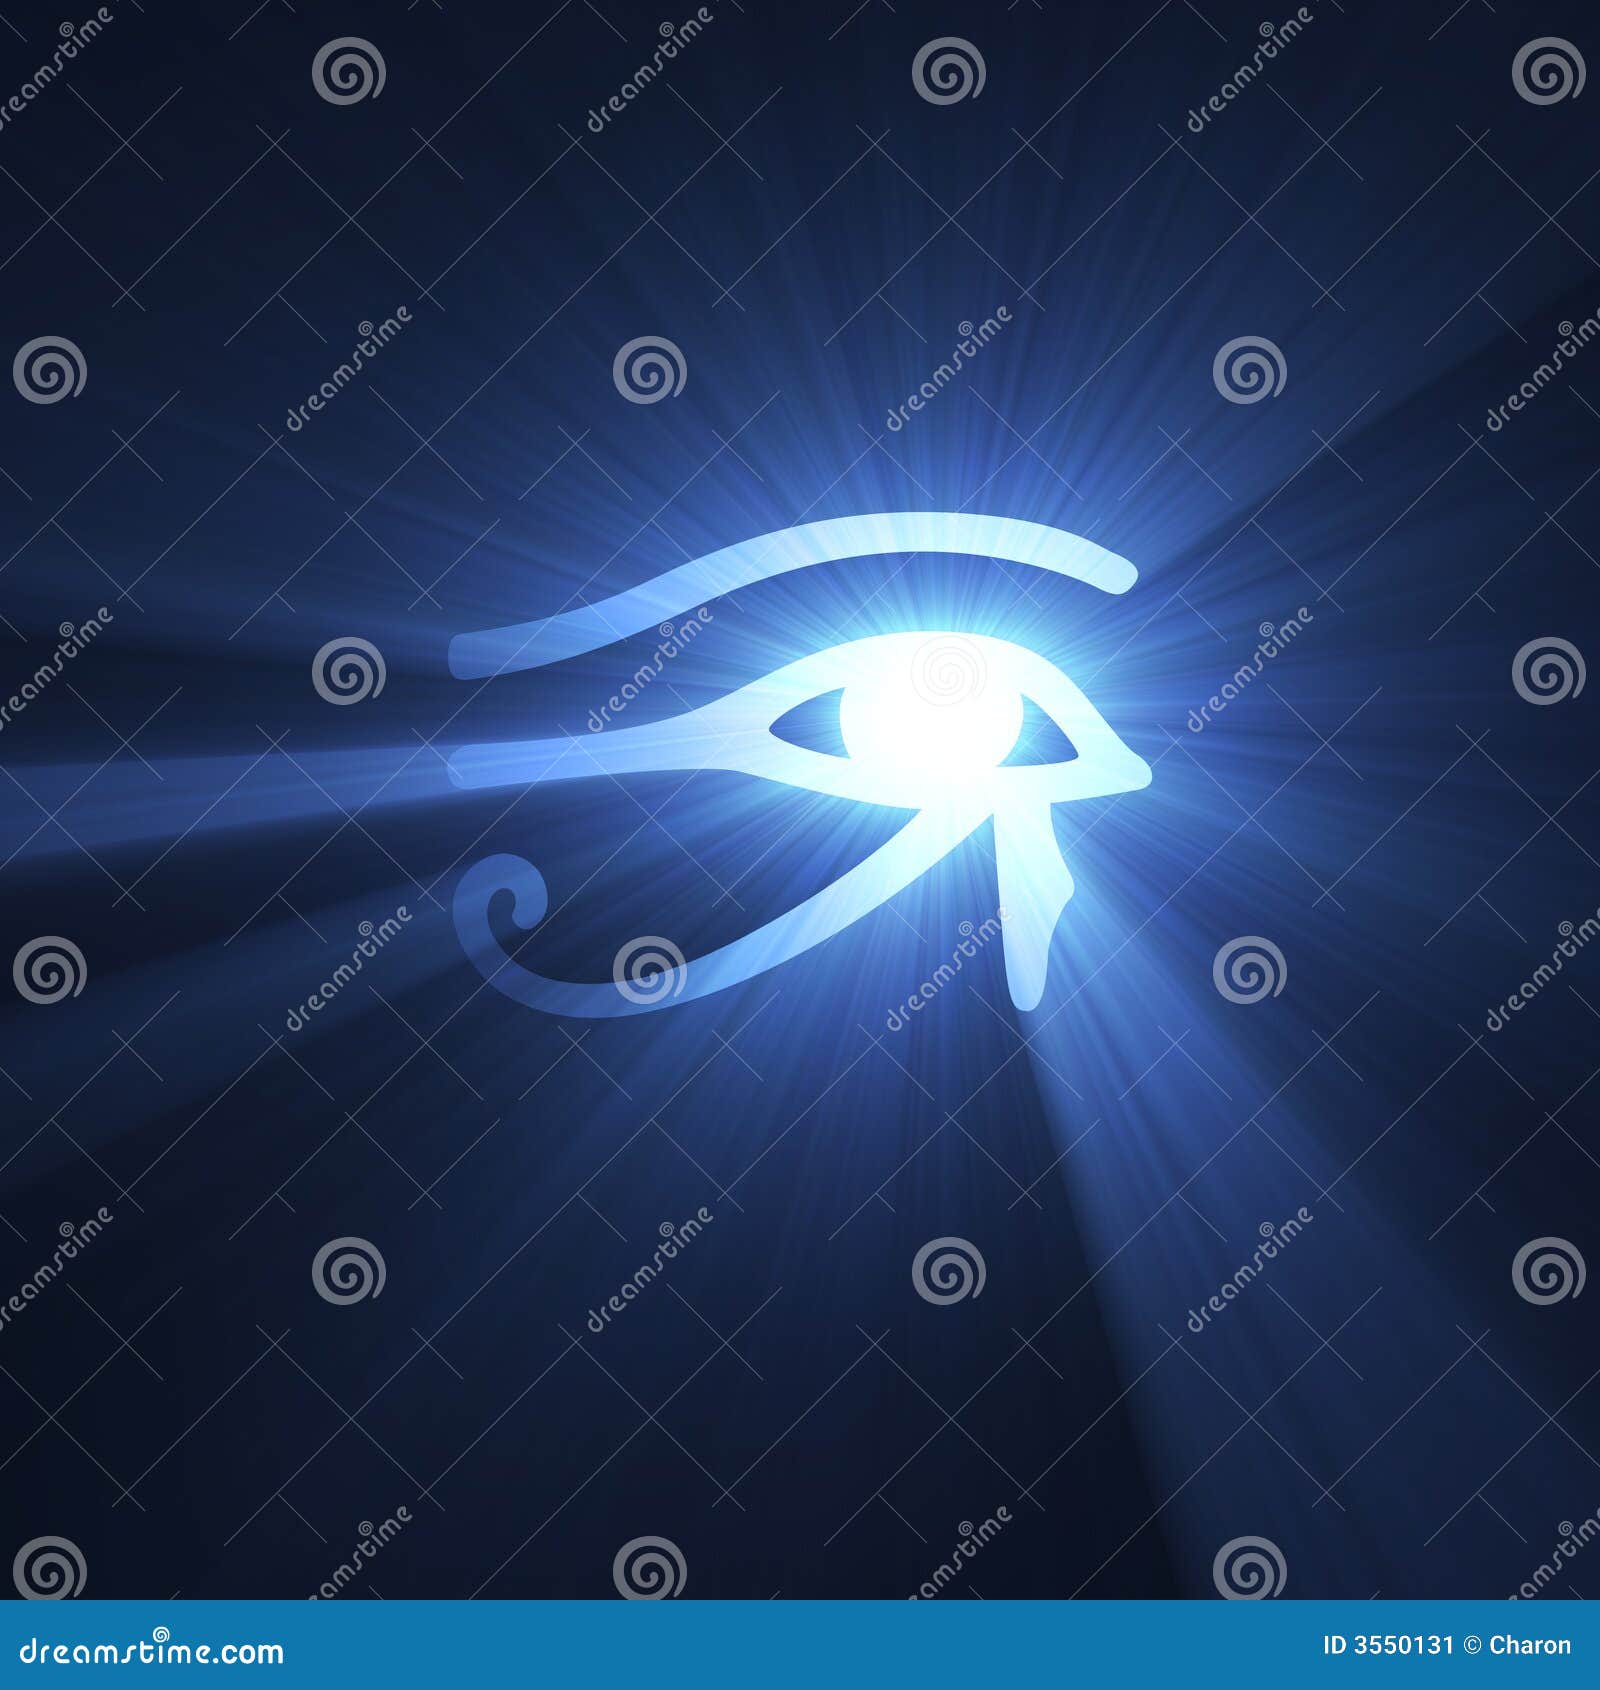 eye of horus egyptian  light flare